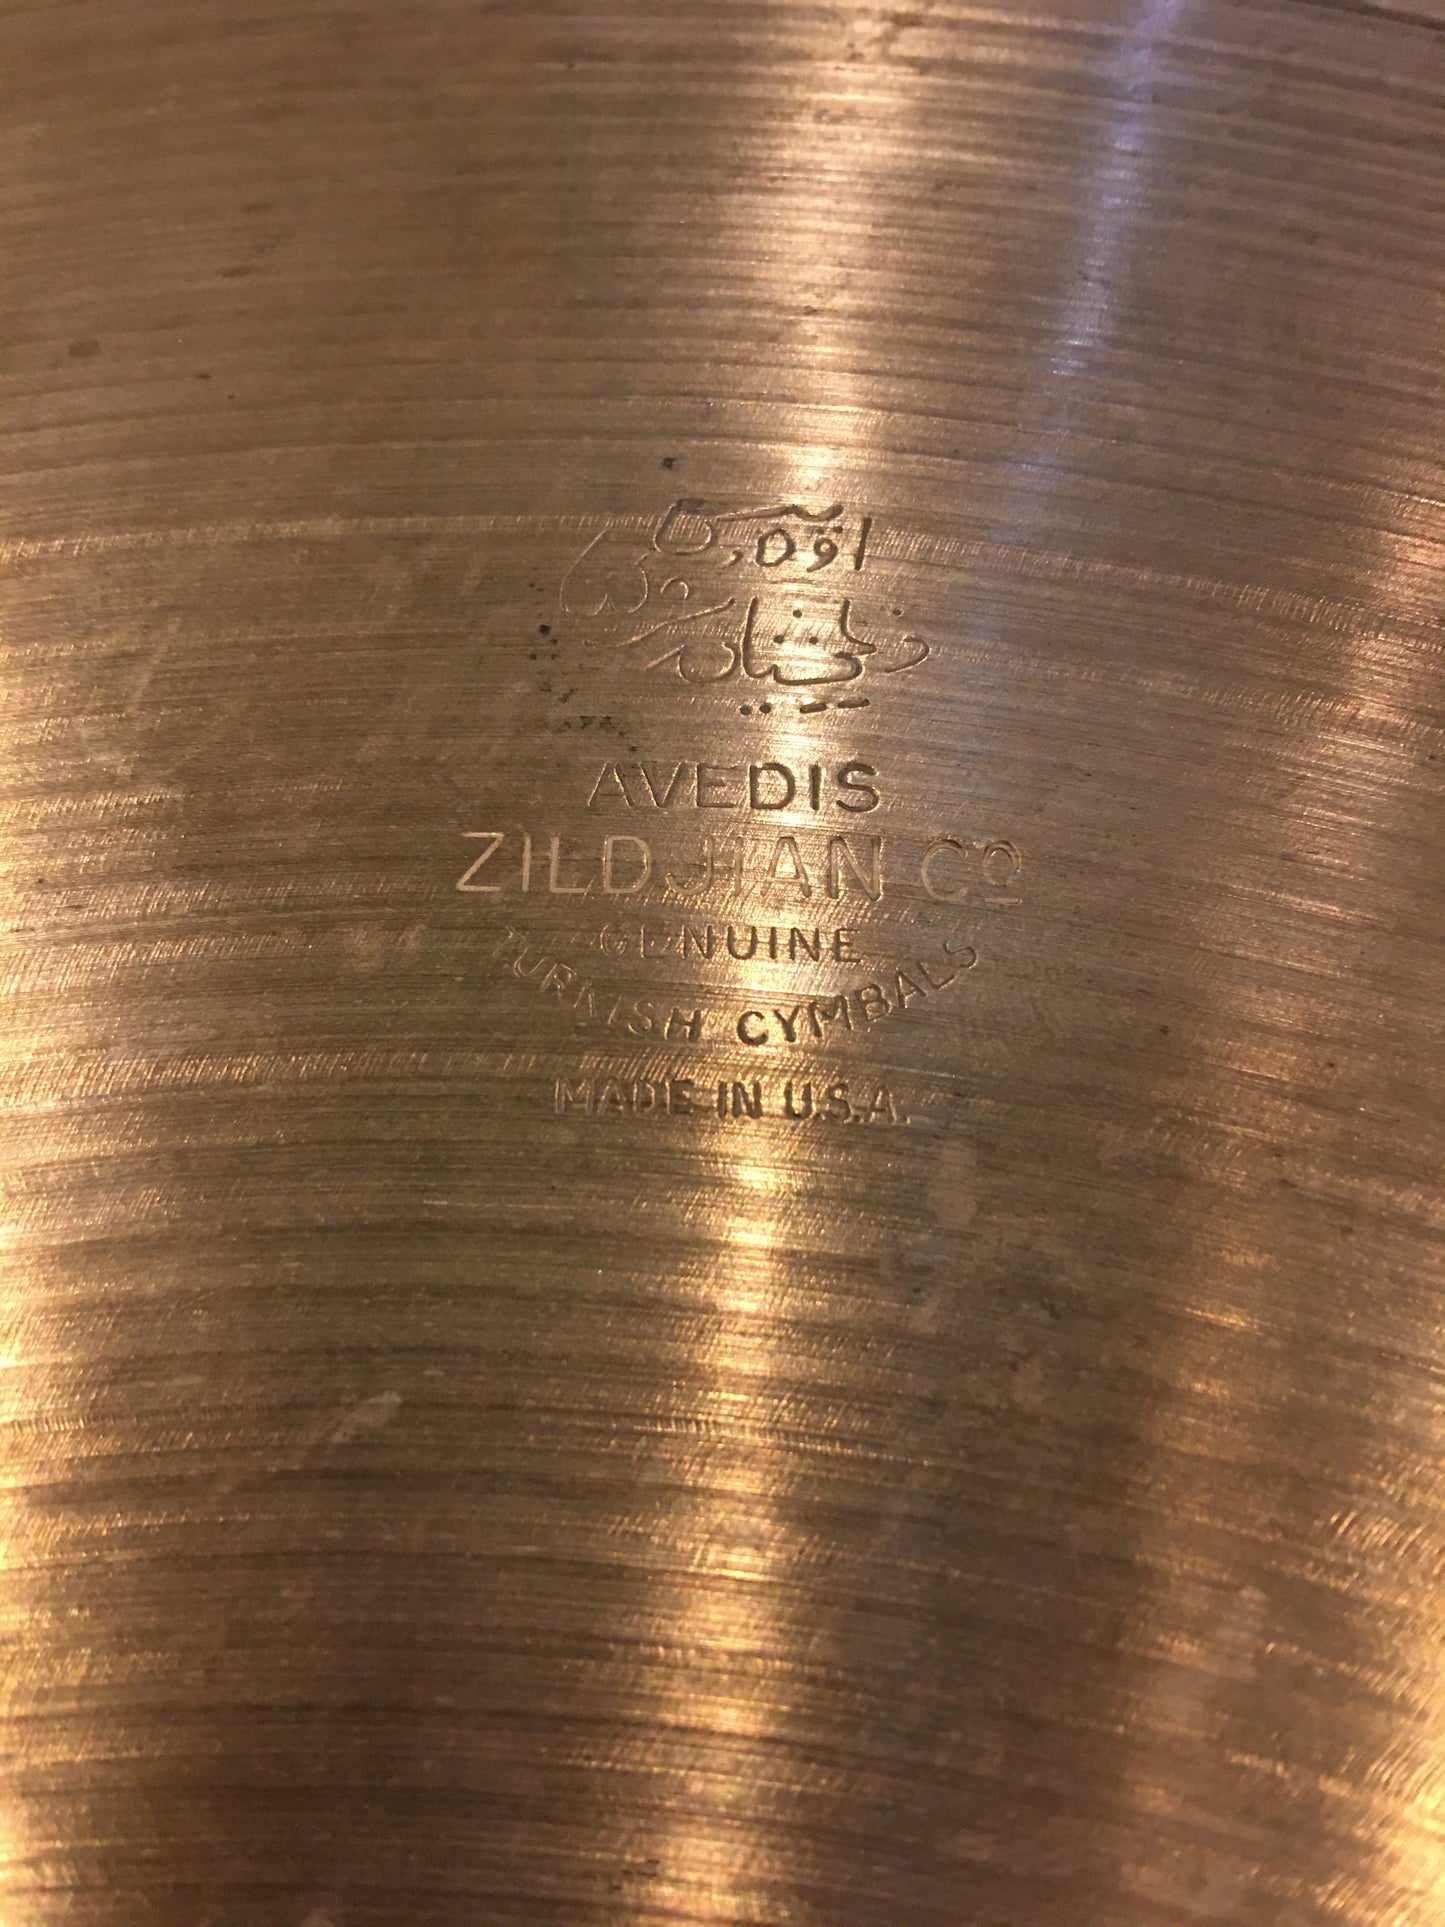 18" 1960s Zildjian A Ride Cymbal 1518g #620